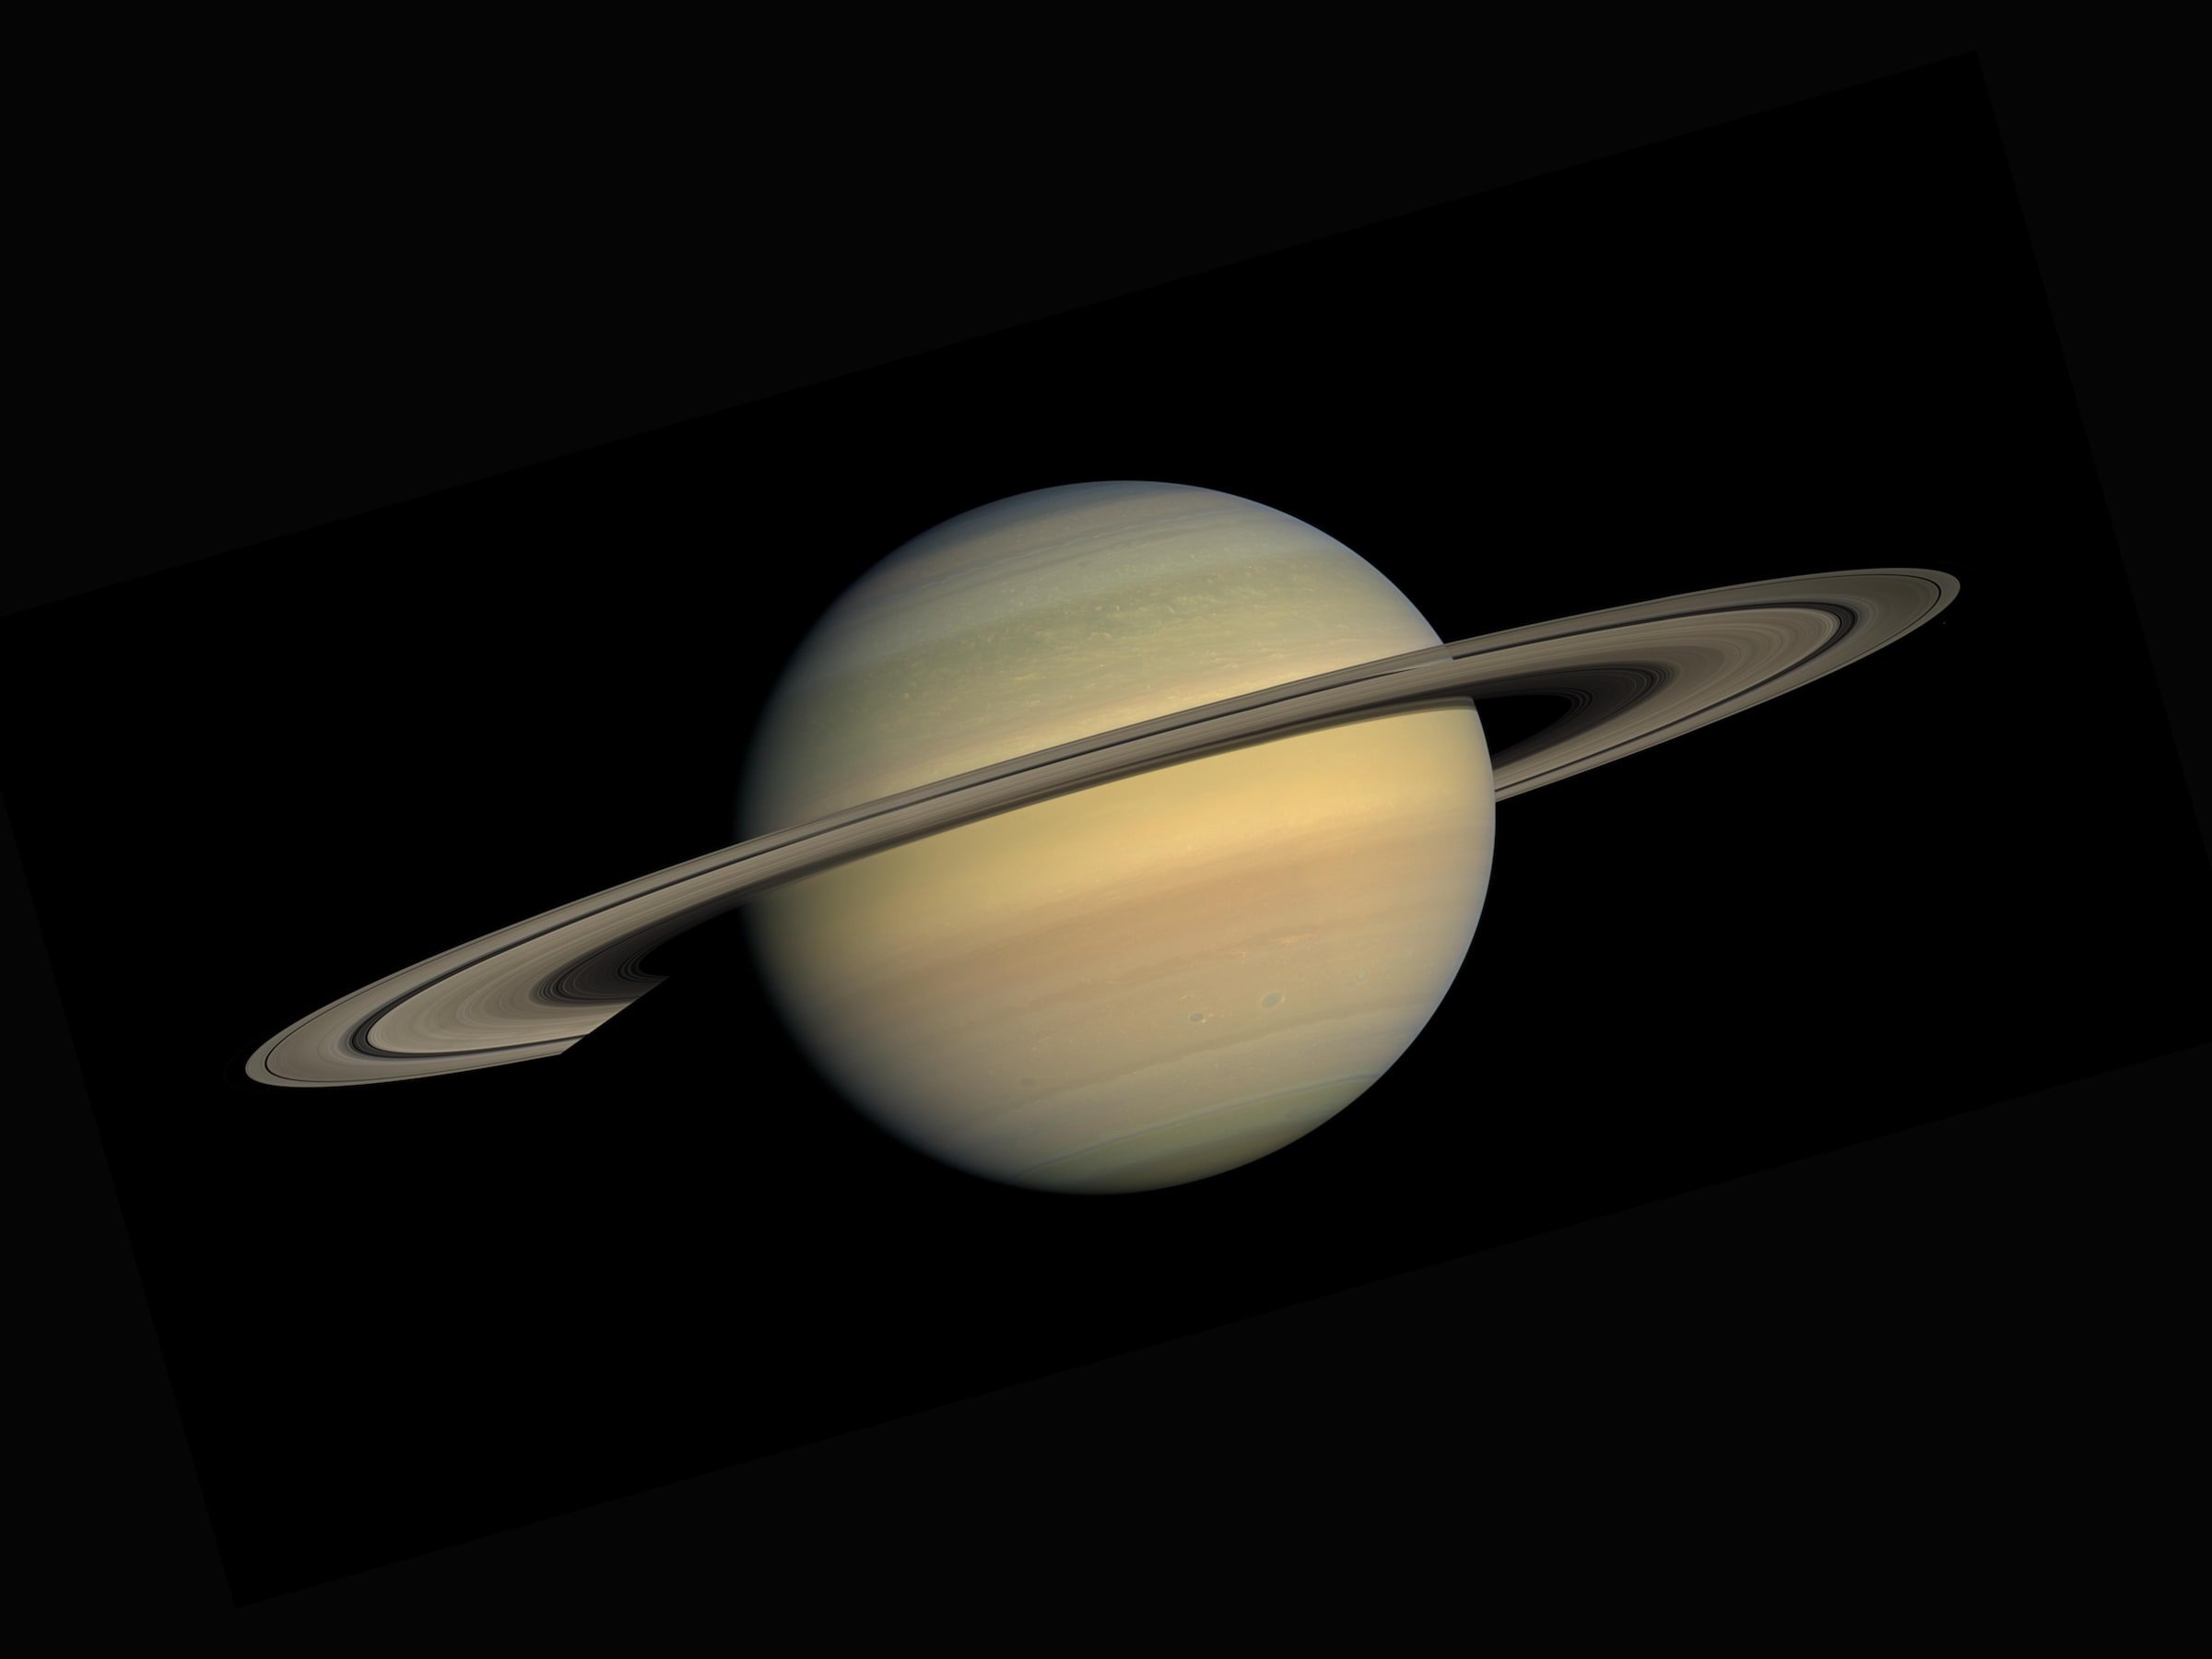 Não é só Saturno que tem anéis: outros planetas e até asteroides podem ostentar essas estruturas (Fonte: Unplash/NASA)